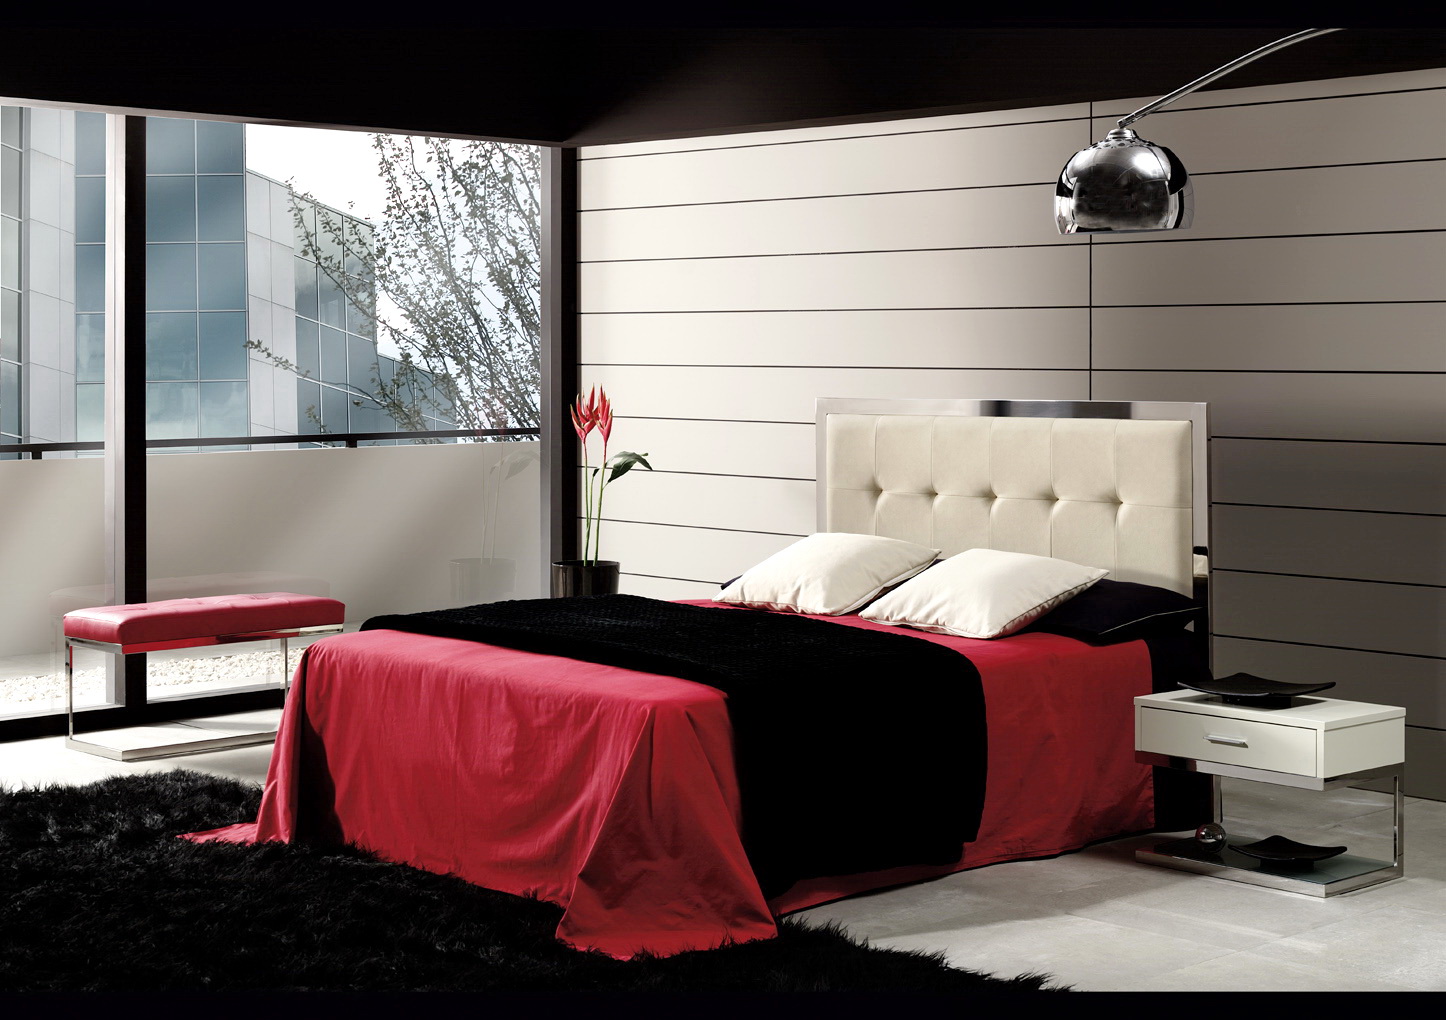 Dormitorio ACERO Modelo 3100 by Altinox